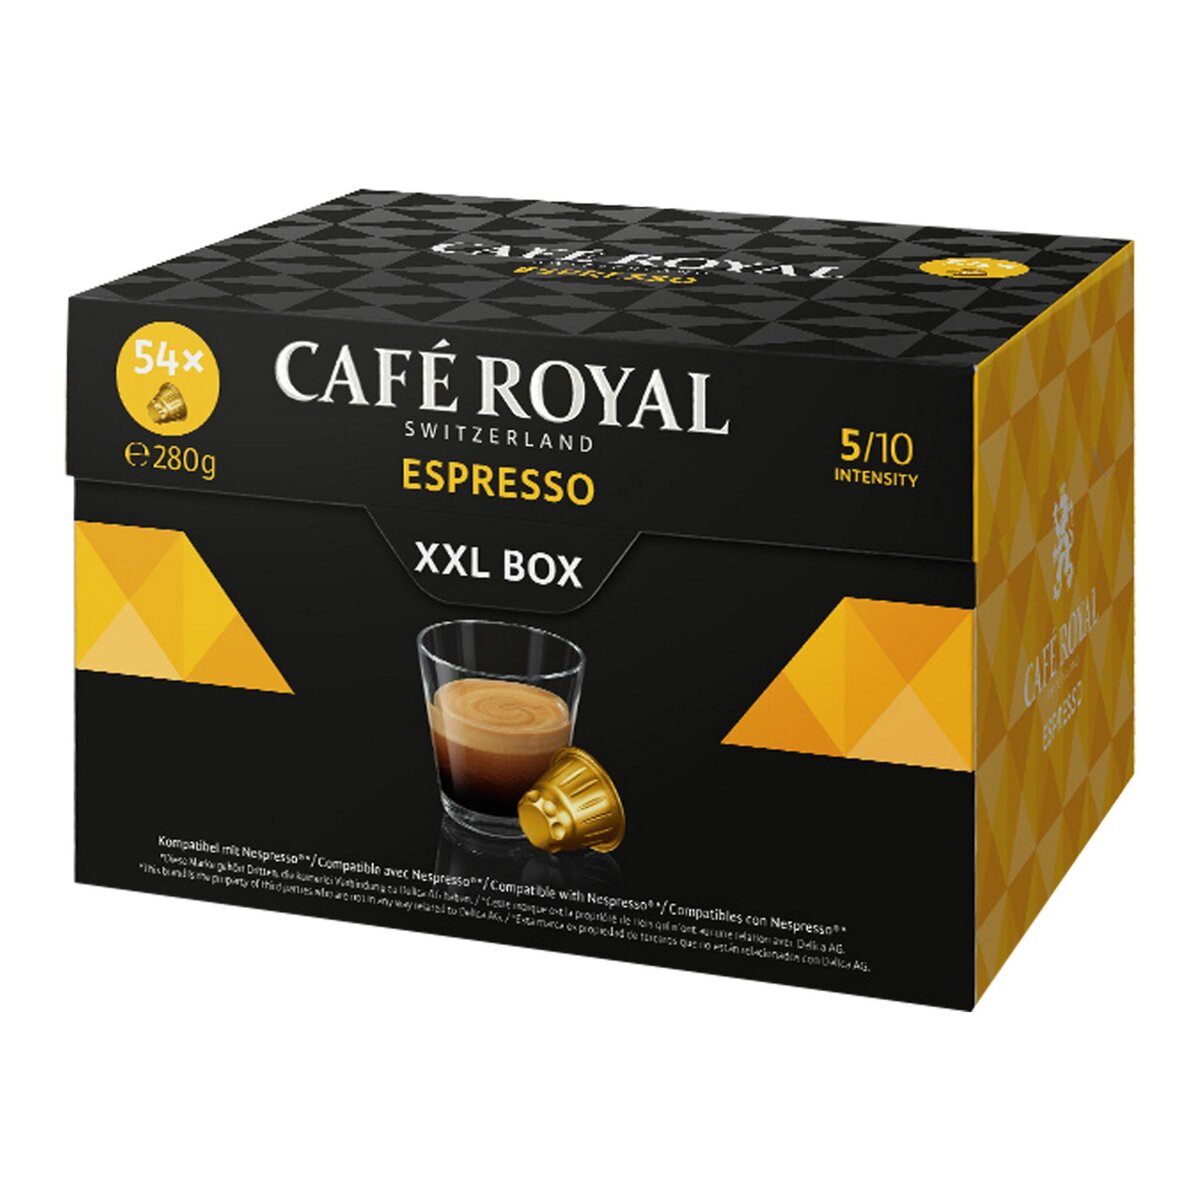 CAFE ROYAL Café Royal espresso capsule x54 -181g